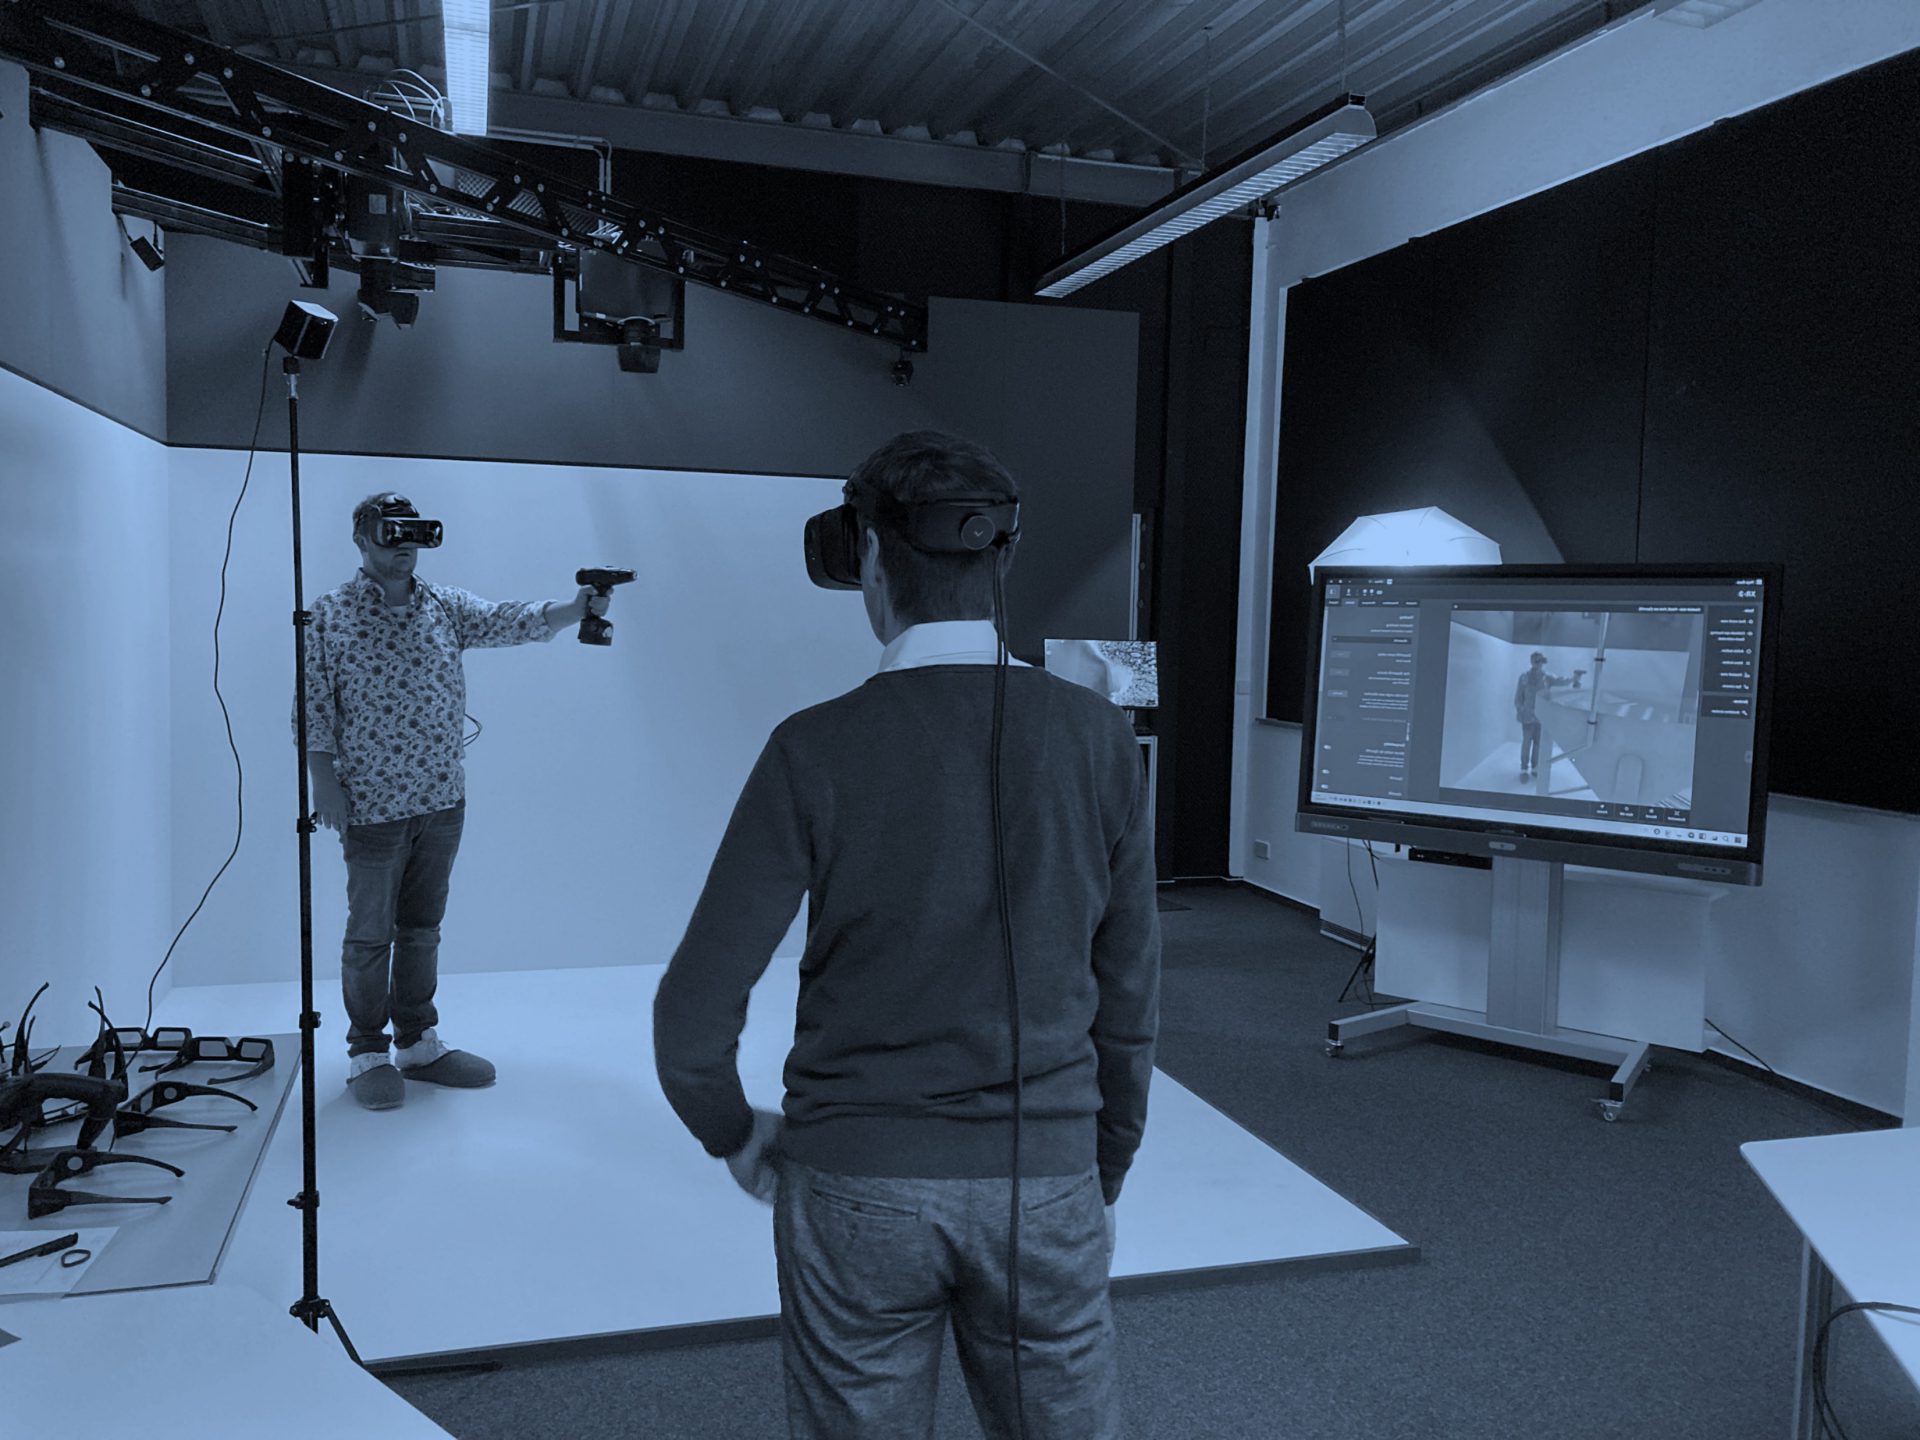 Ein Mann mit VR-Brille und Controller steht vor dem Bildschirm, auf dem seine Abbildung mit einer Maschine zu sehen ist.